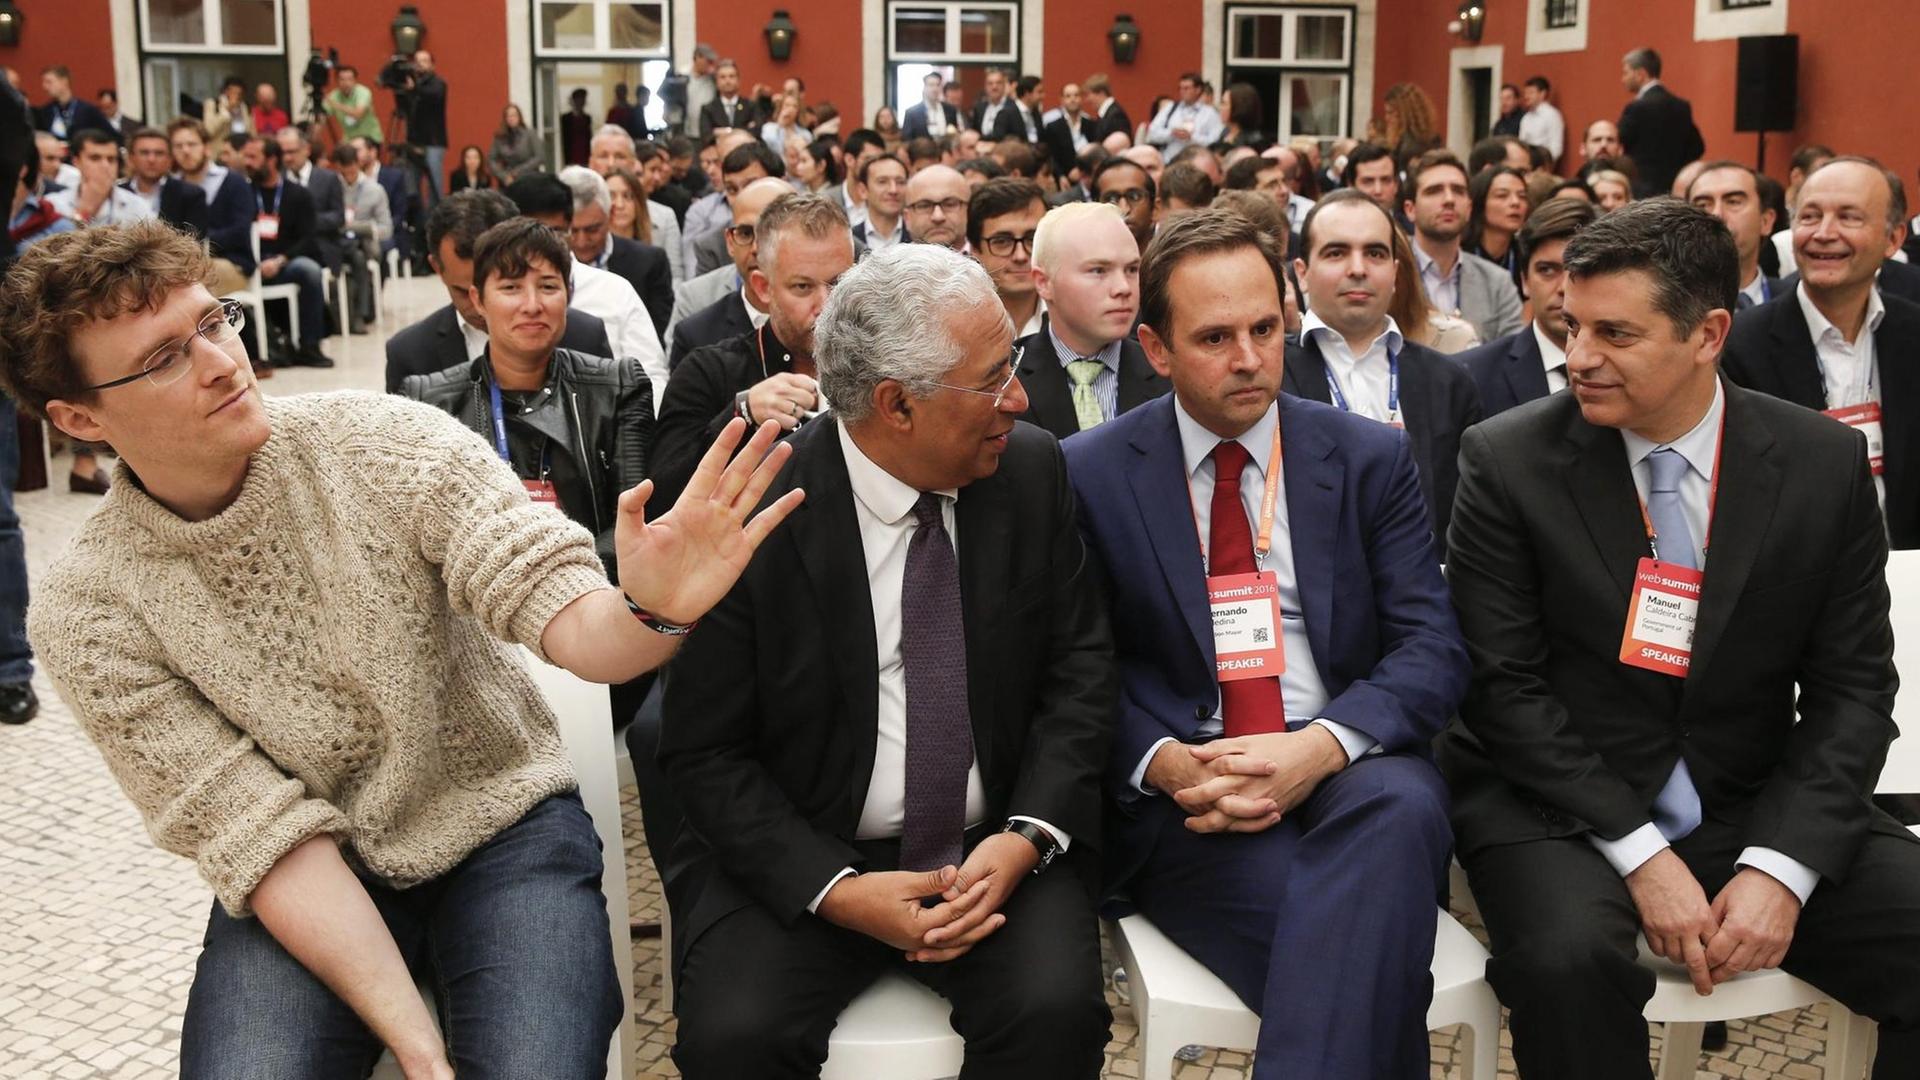 Teilnehmer des Web Summit in Lissabon, unter anderem Portugals Regierungschef Antonio Costa (2. v. l.) sowie der Mitbegründer der Konferenz, Paddy Cosgrave (l).